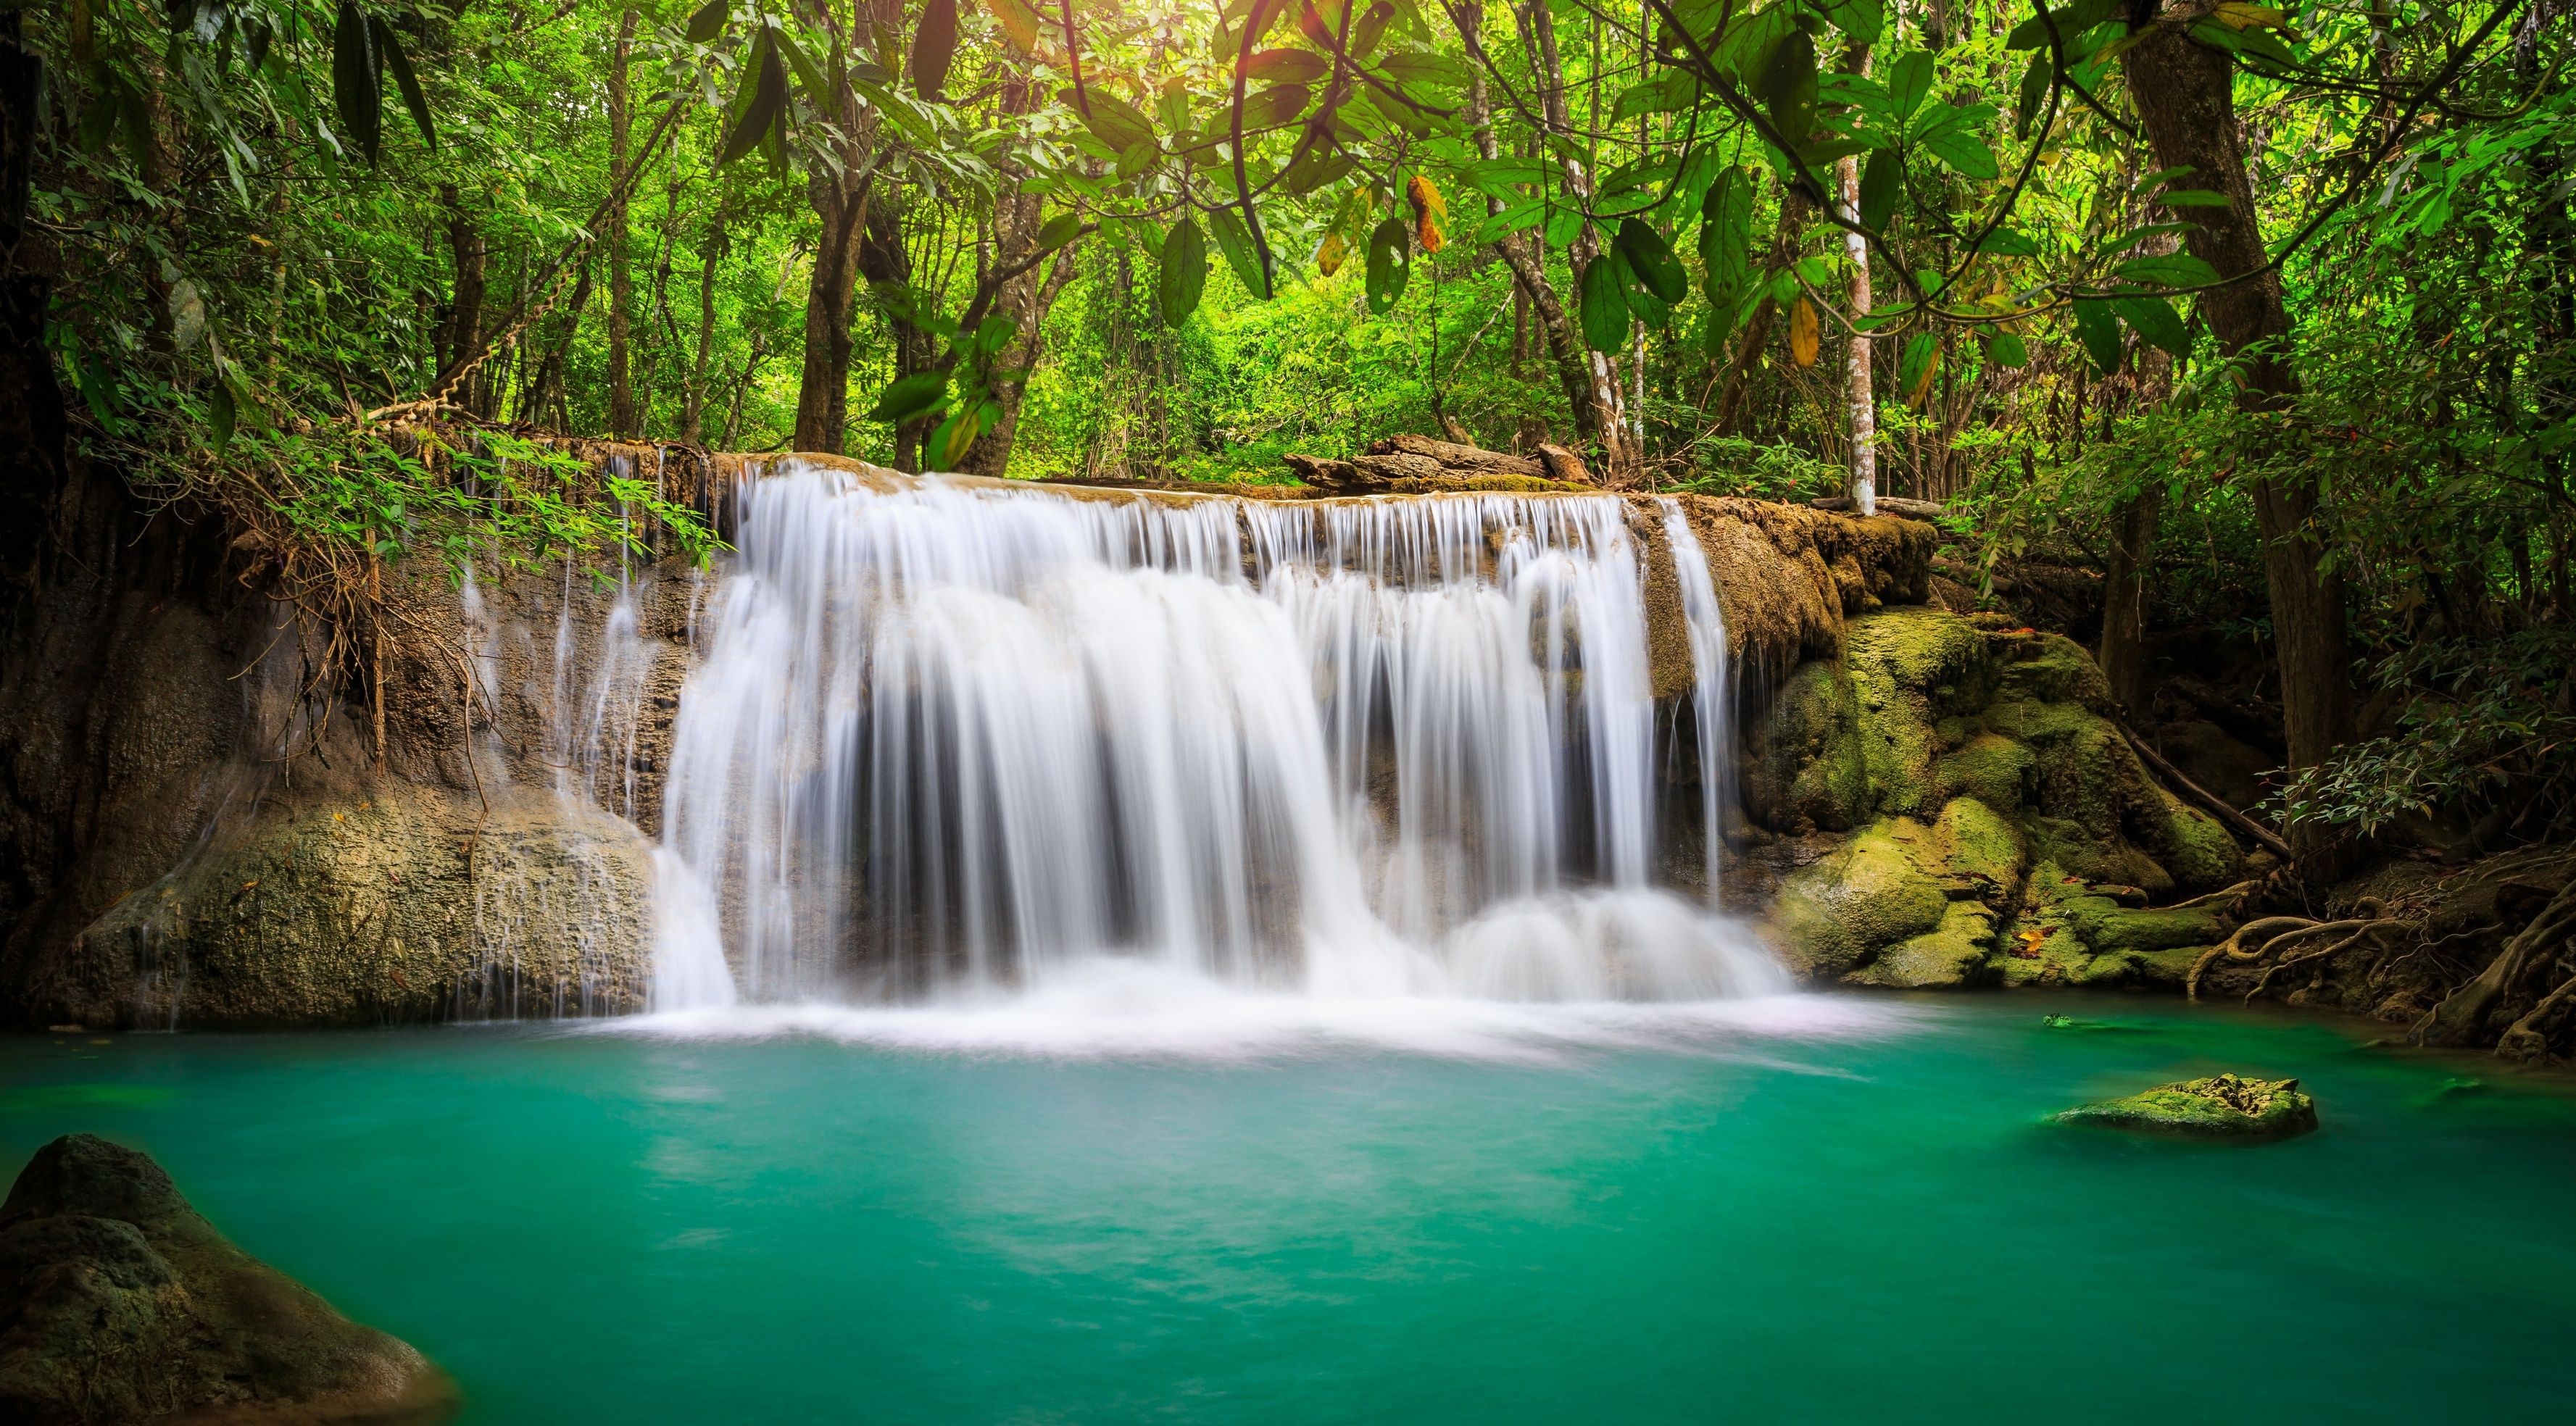 آبشار منتهی به رودخانه خوشرنگ در جنگل در یک قاب هنری 